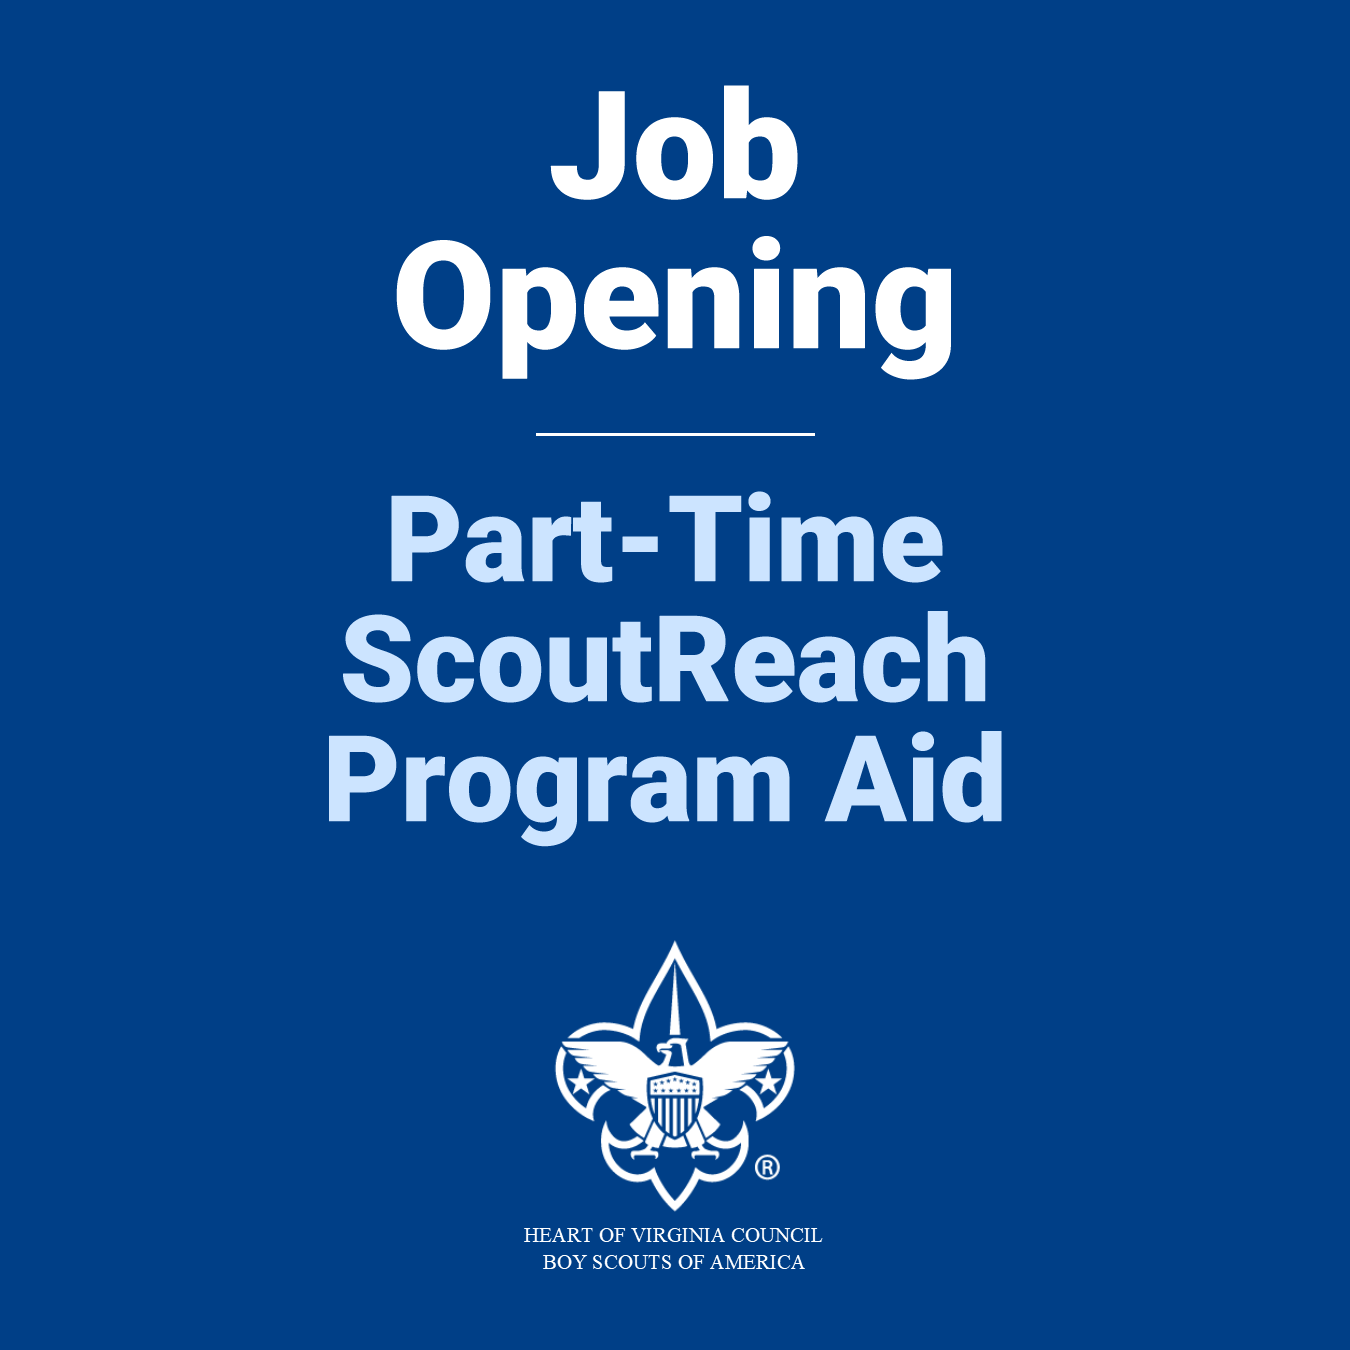 ScoutReach Program Aid